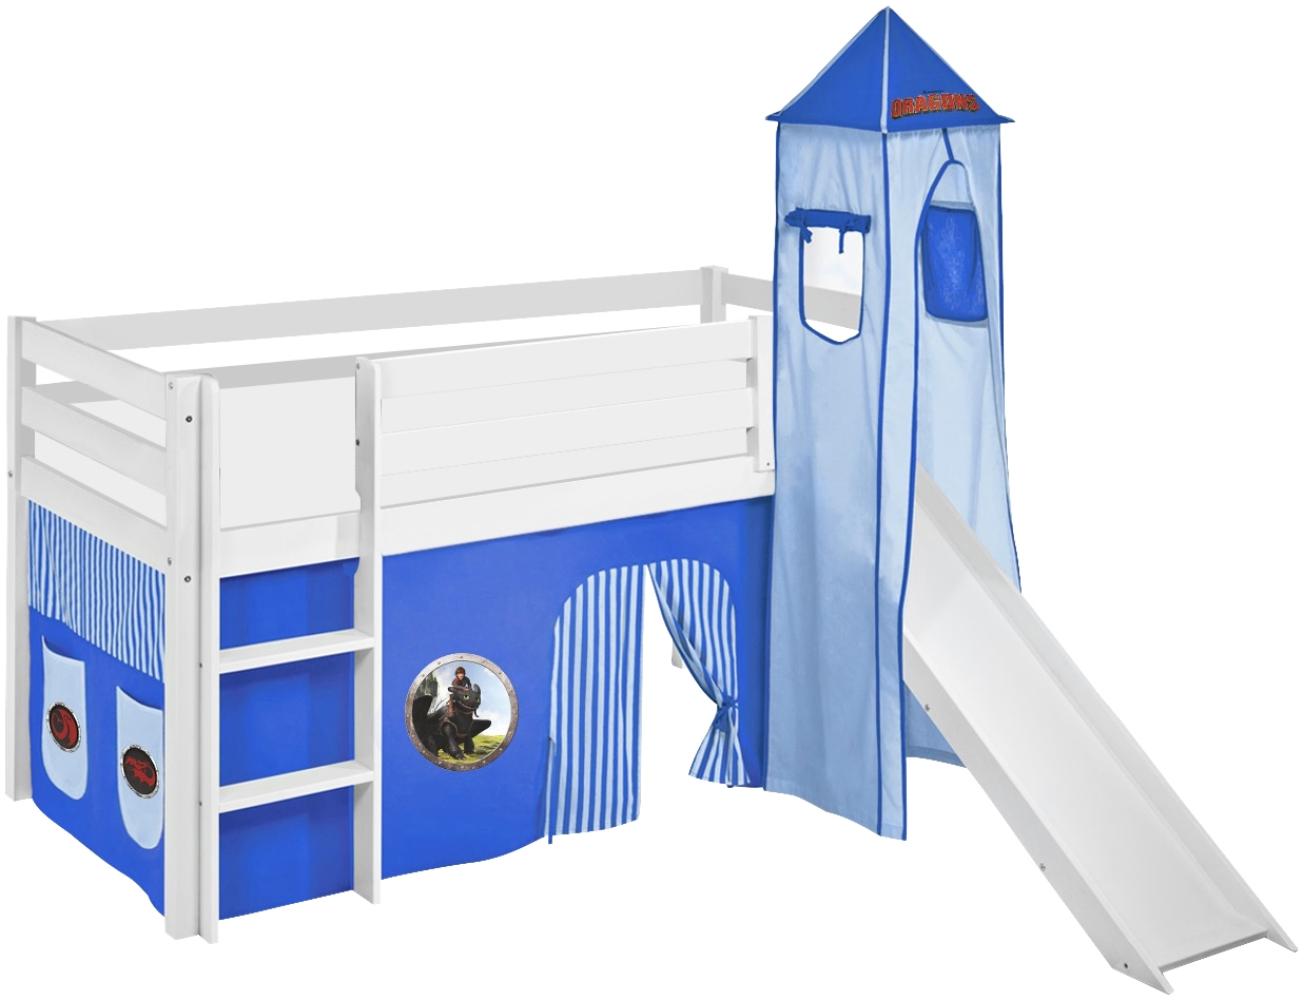 Lilokids 'Jelle' Spielbett 90 x 200 cm, Dragons Blau, Kiefer massiv, mit Turm, Rutsche und Vorhang Bild 1